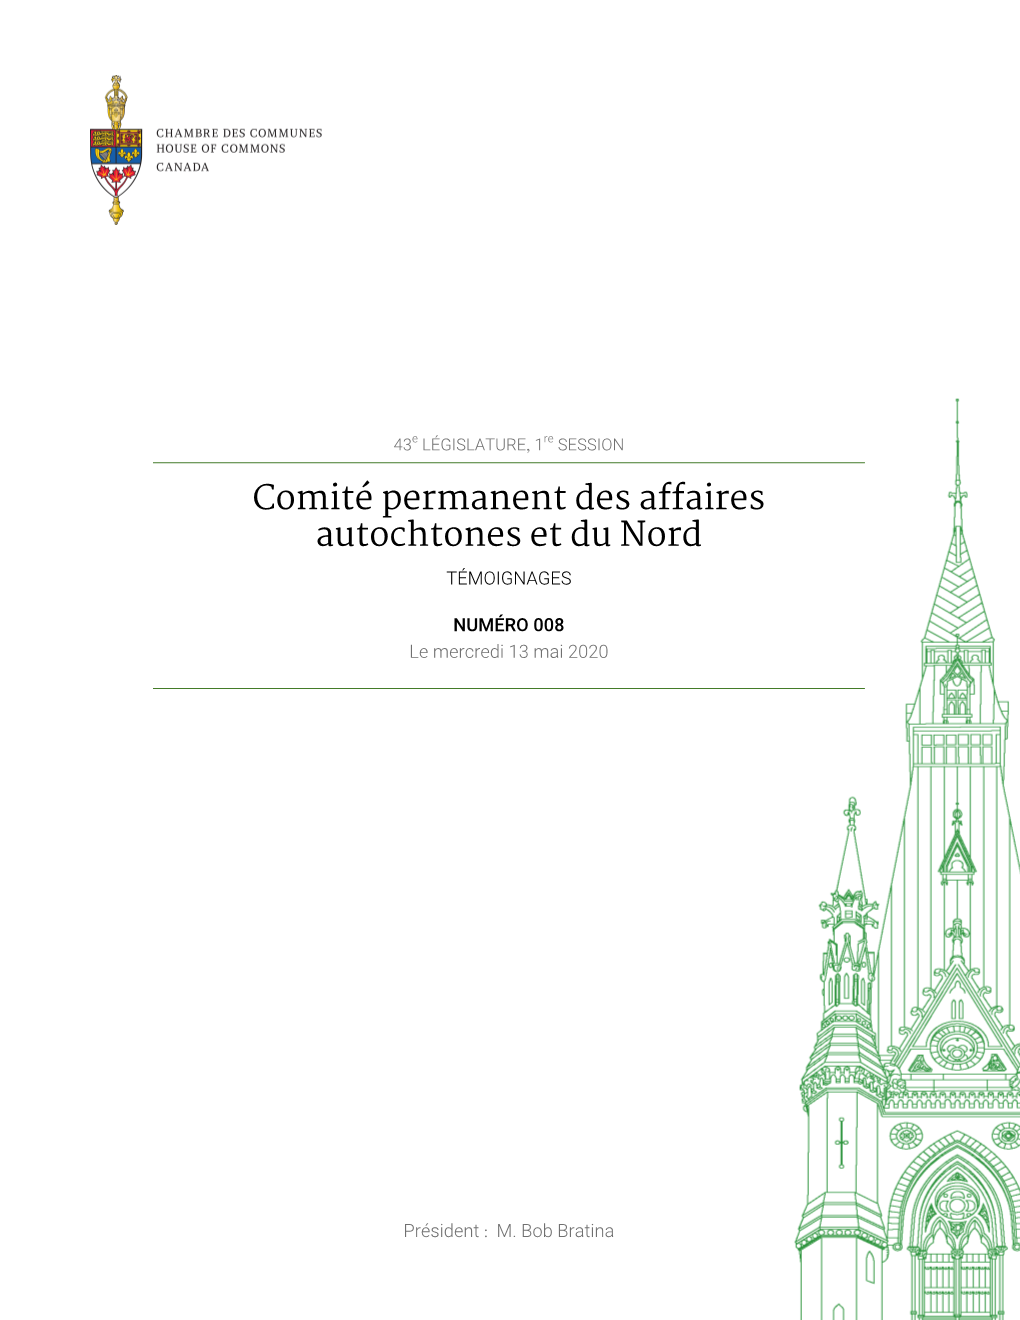 Témoignages Du Comité Permanent Des Affaires Autochtones Et Du